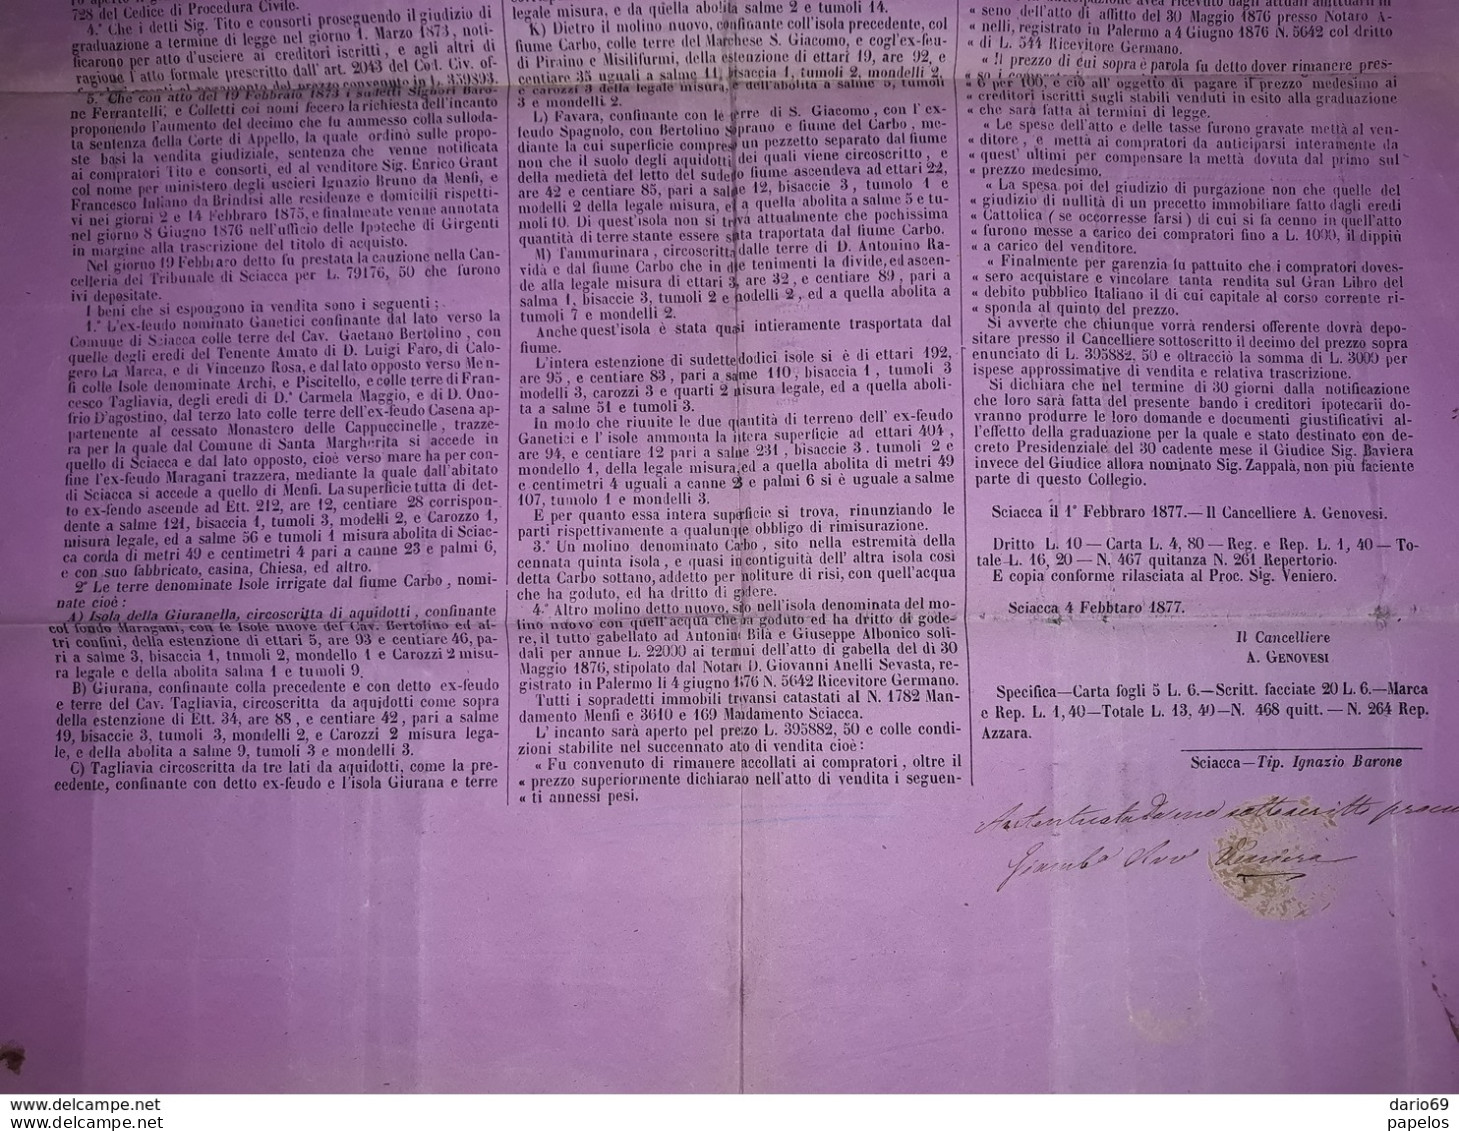 1877 MANIFESTO SCIACCA  AGRIGENTO  BANDO PER VENDITA GIUDIZIARIA  CON MARCHE DA BOLLO - Historische Dokumente